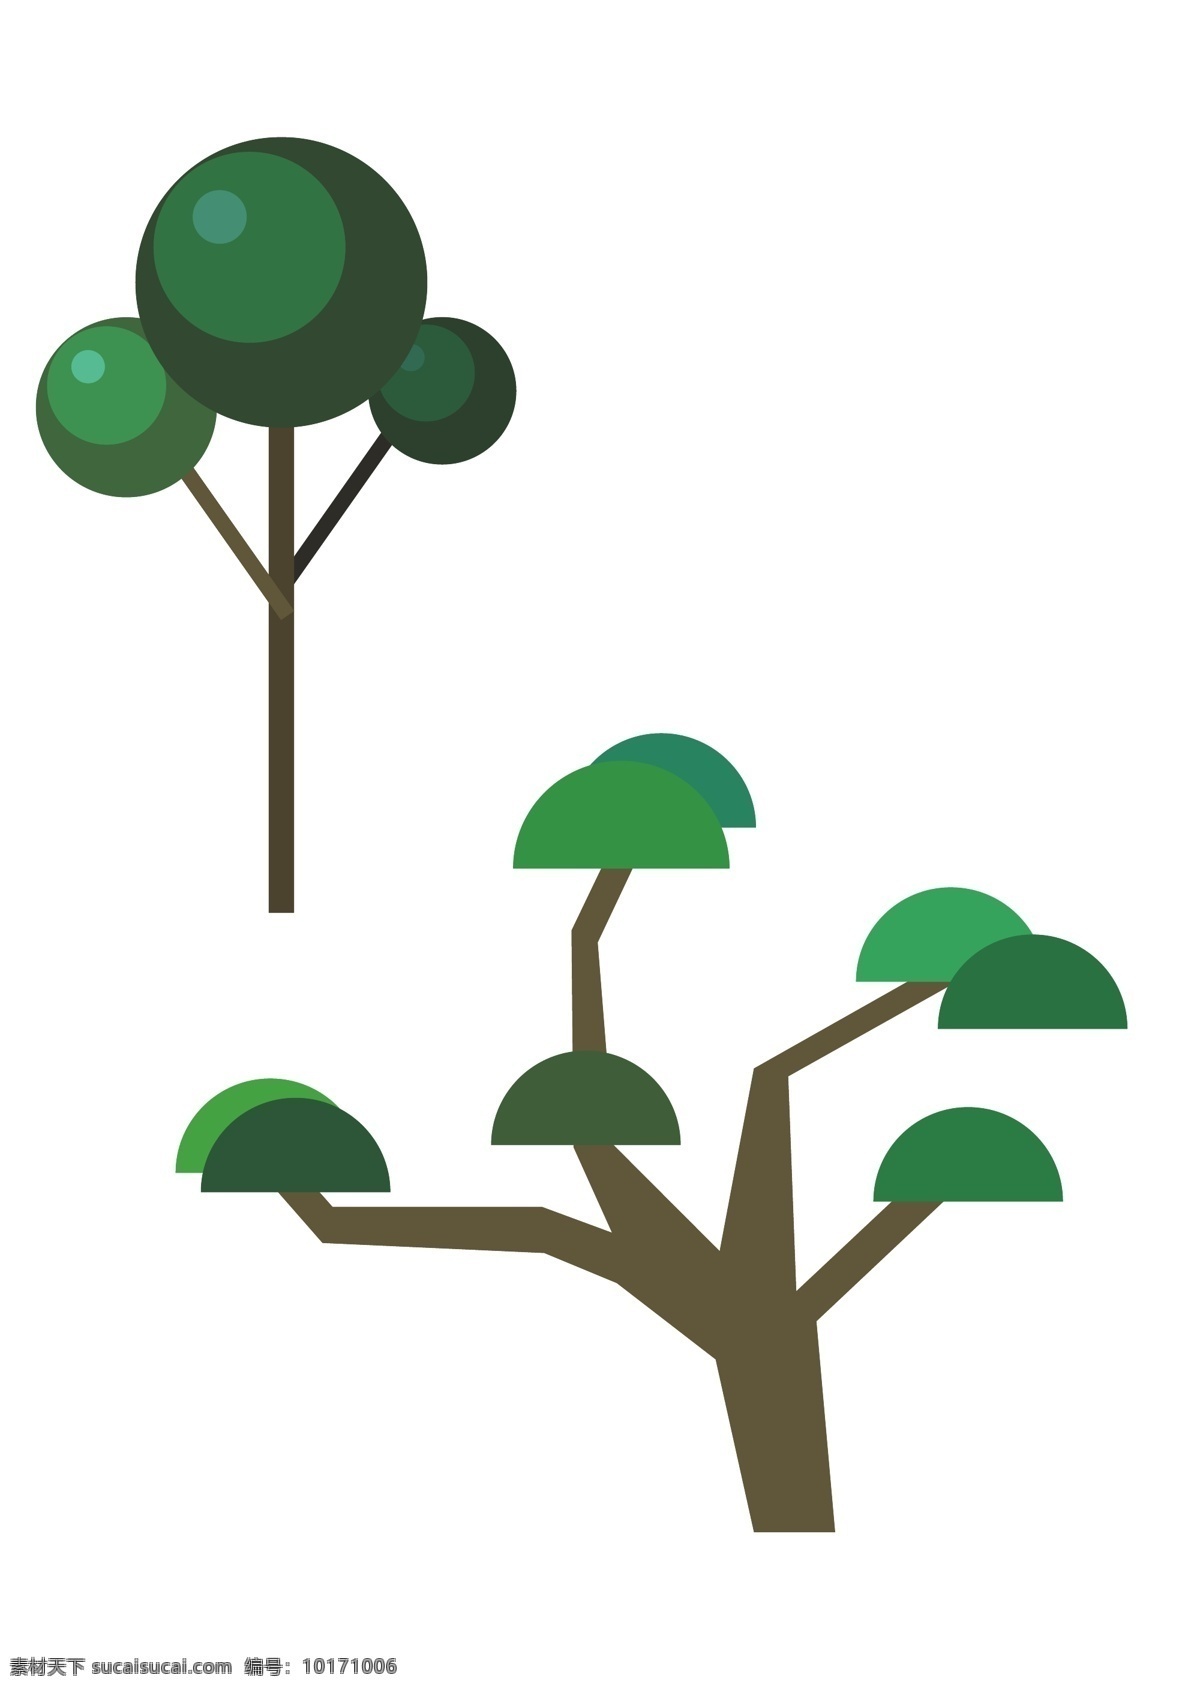 矢量树 简笔画图片 卡通植物 卡通大自然 蘑菇树木 植物元素 插画eps 简单 卡通 树 圆形 常用 底纹边框 其他素材 自然景观 建筑园林